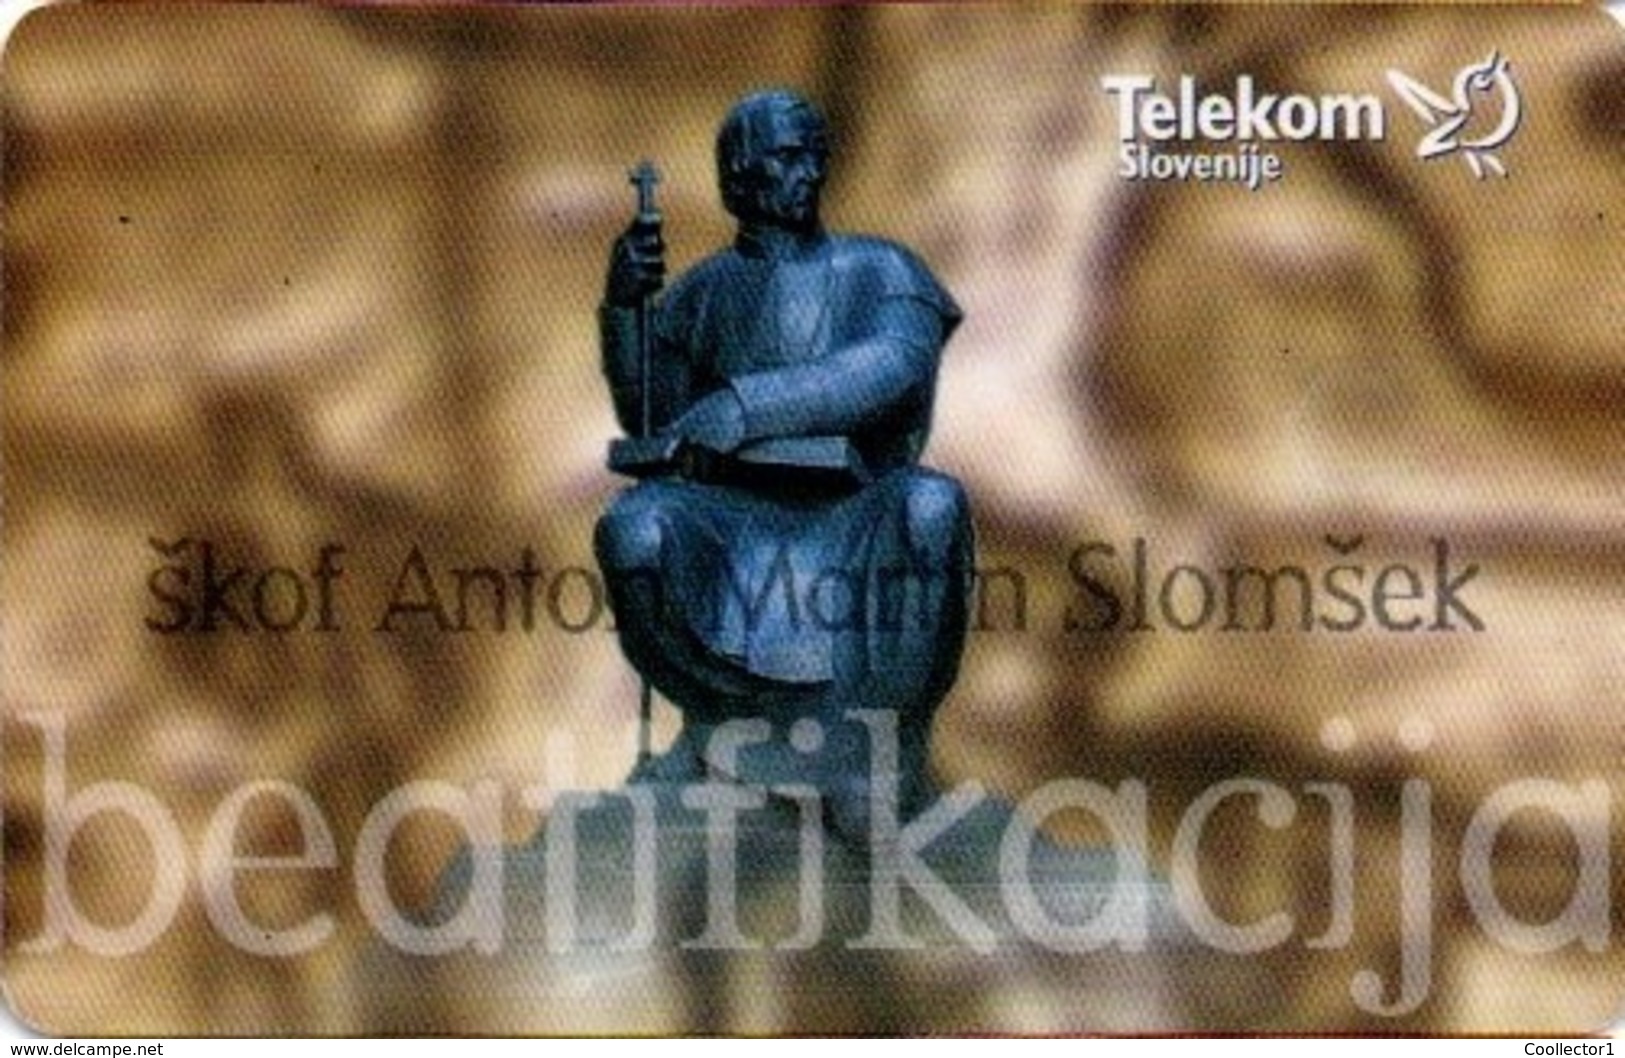 Slovenia, Slovenija, Slowenien, Telekom Slovenije - TS249. Very Rare Phonecard - Pope. Only 1.999 Pieces Issued. - Slovénie